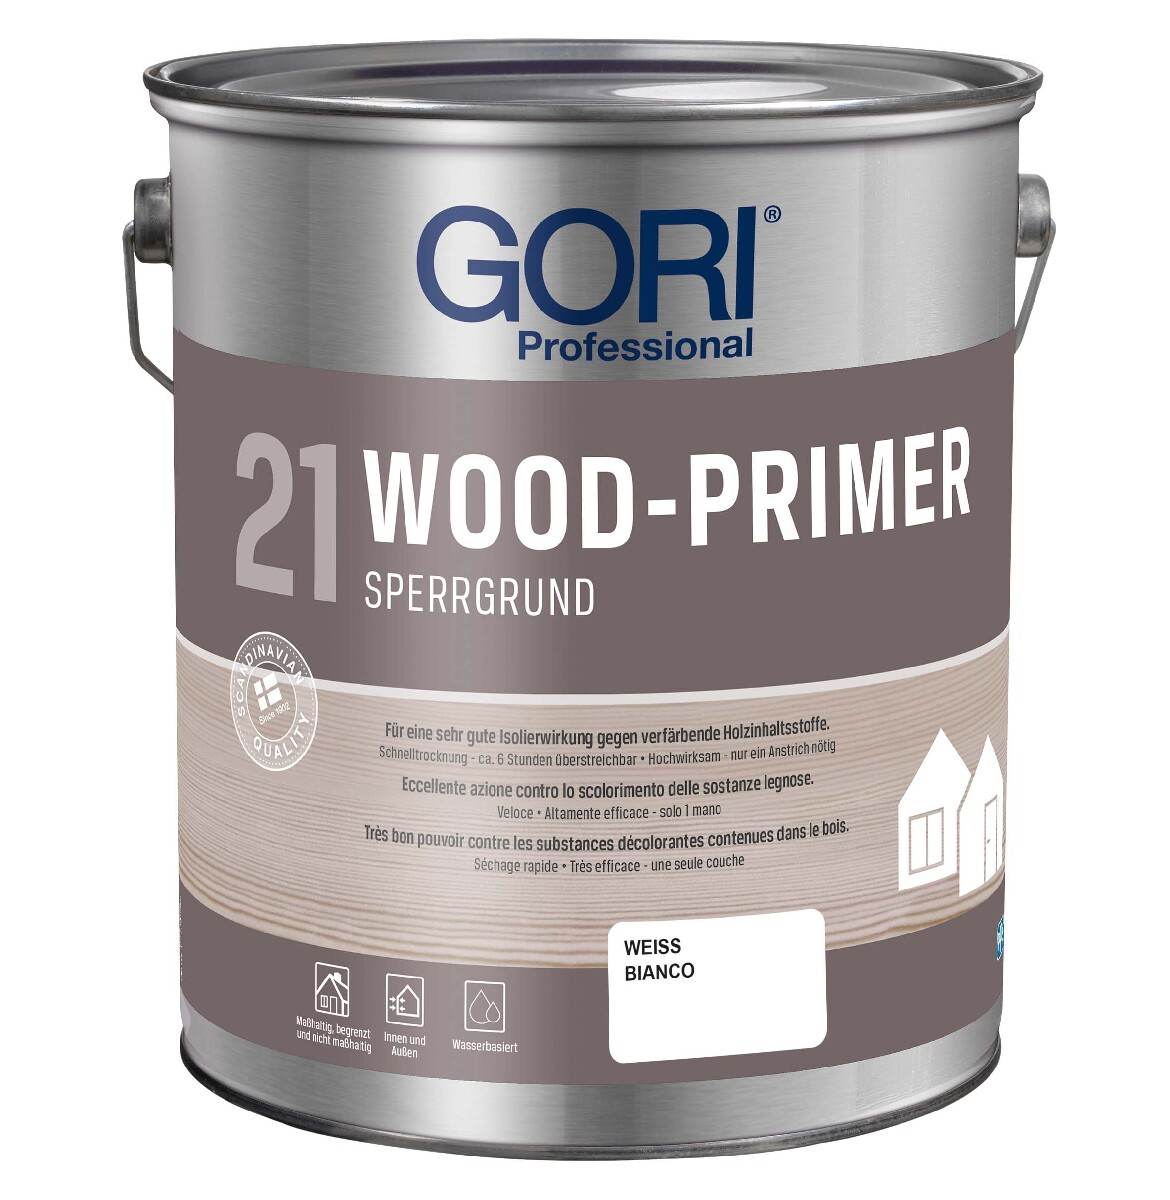 GORI 21 WOOD-PRIMER 5 L in Weiß, Sperr- und Isoliergrund für Innen & Außen, Spezialgrundierung